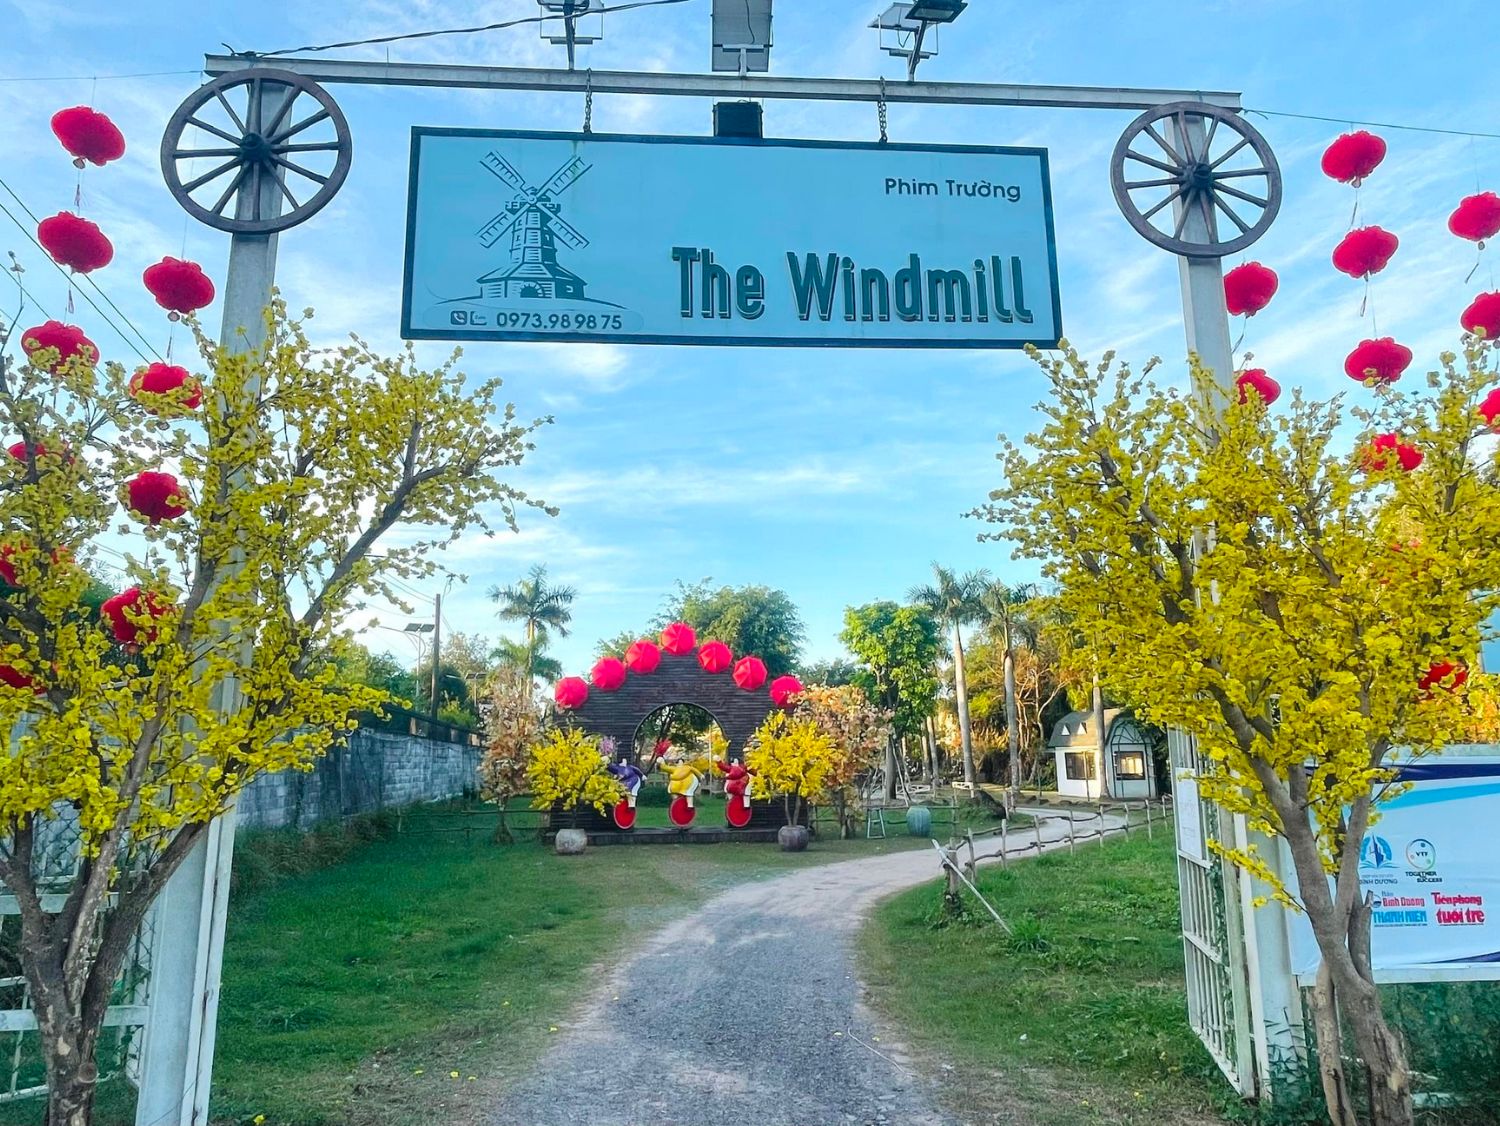 Check in Phim trường Windmill, thiên đường chụp ảnh nổi tiếng nhất miền Nam 2